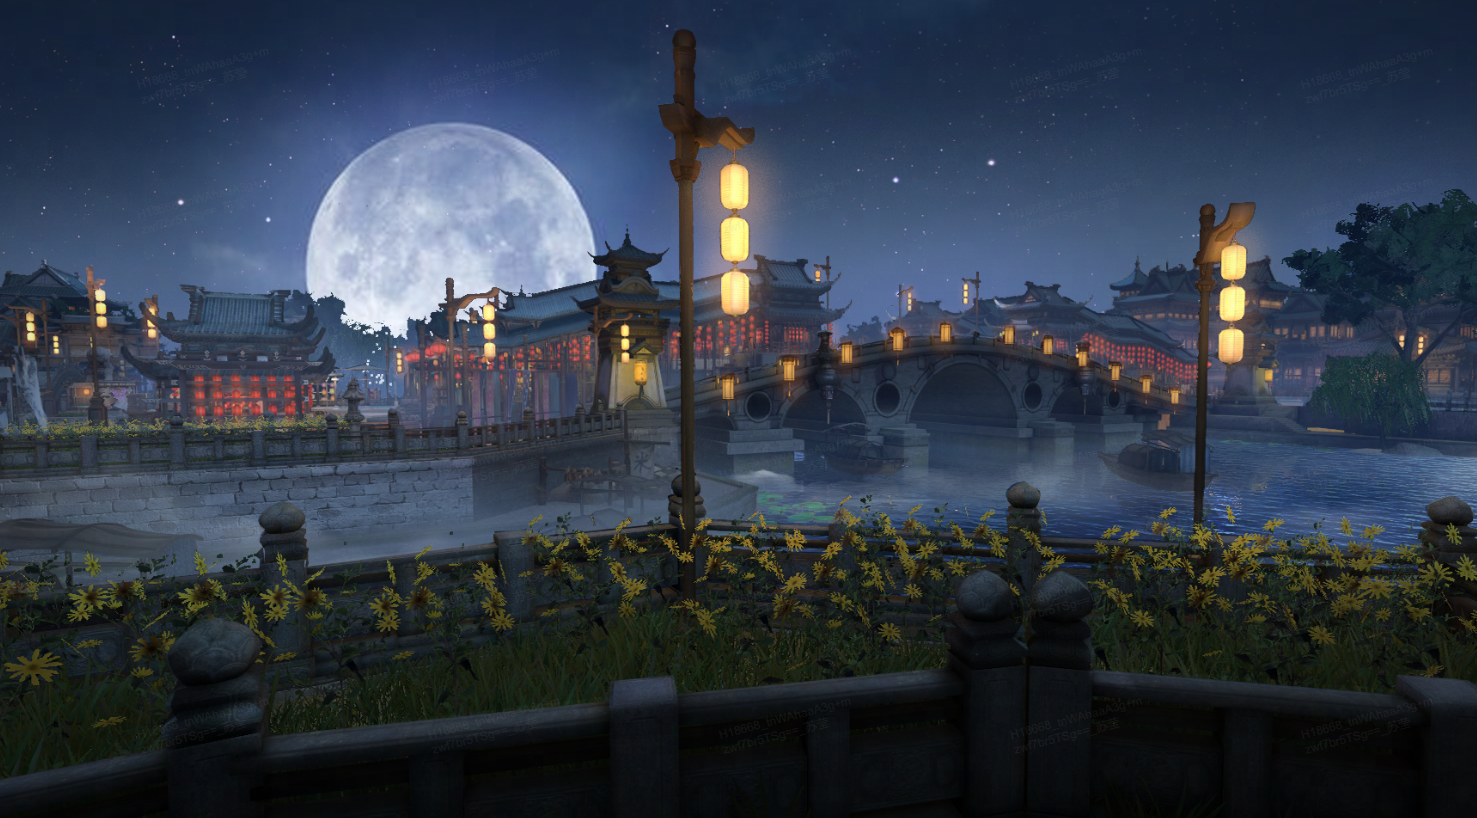 图片展示了一座古典风格的石桥，两旁有灯笼照明，背景是满月下的古建筑群，整个场景显得宁静而美丽。